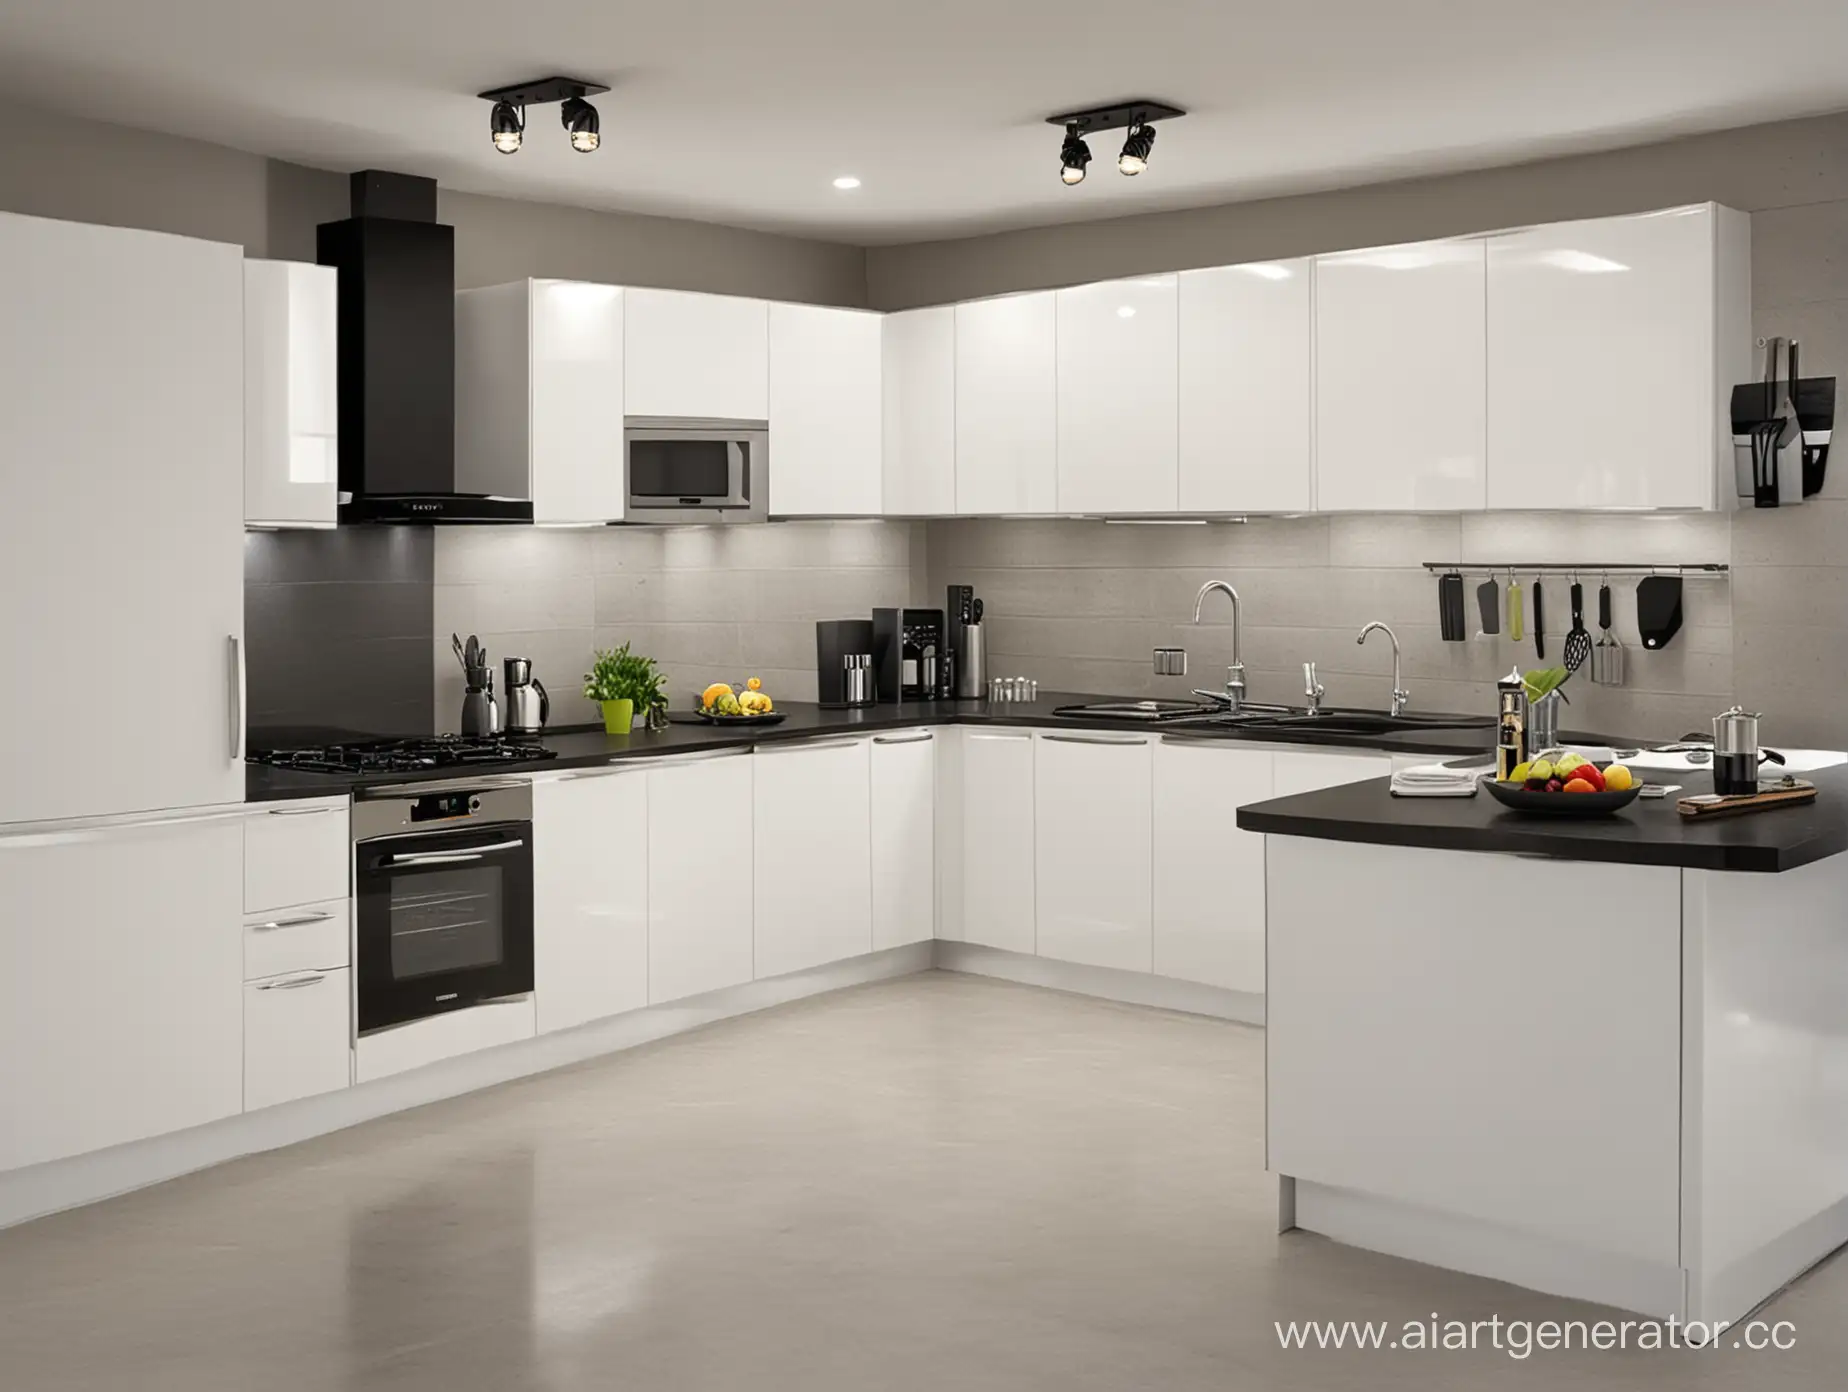 Contemporary-Kitchen-Interior-with-Sleek-Design-Elements